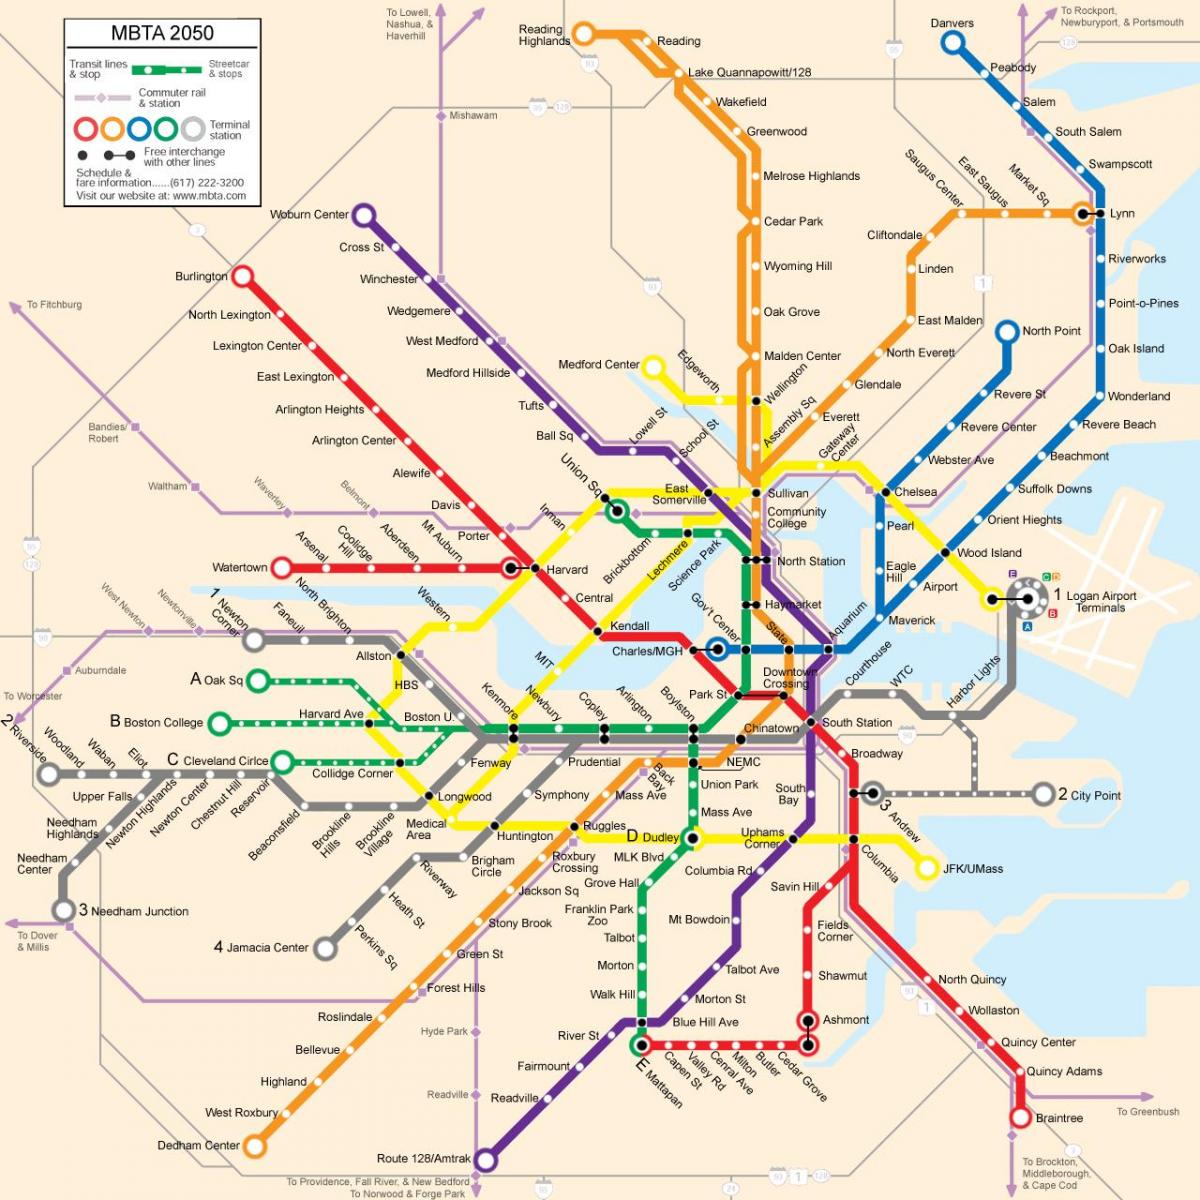 Boston toplu taşıma haritası